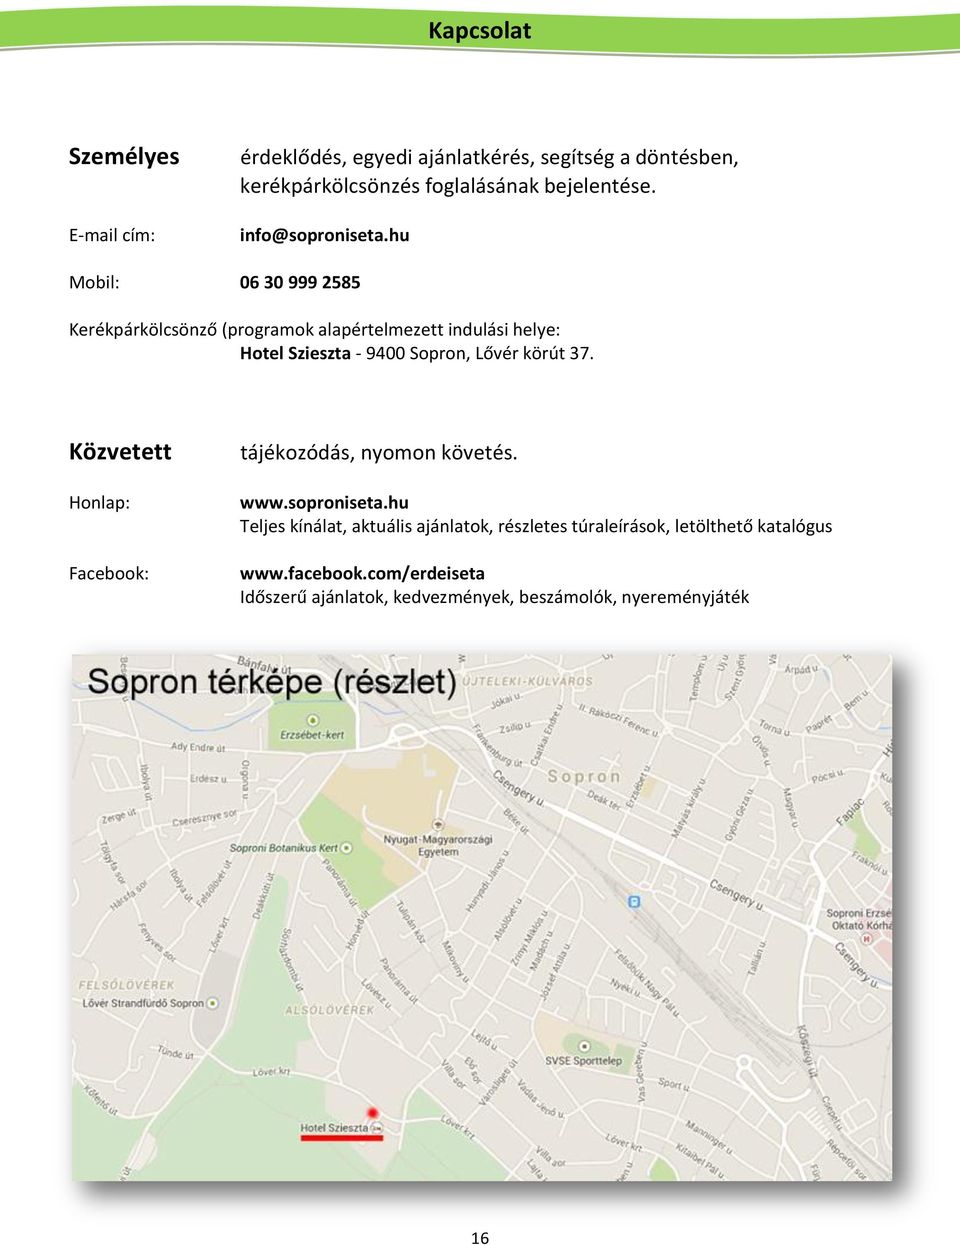 hu Mobil: 06 30 999 2585 Kerékpárkölcsönző (programok alapértelmezett indulási helye: Hotel Szieszta - 9400 Sopron, Lővér körút 37.